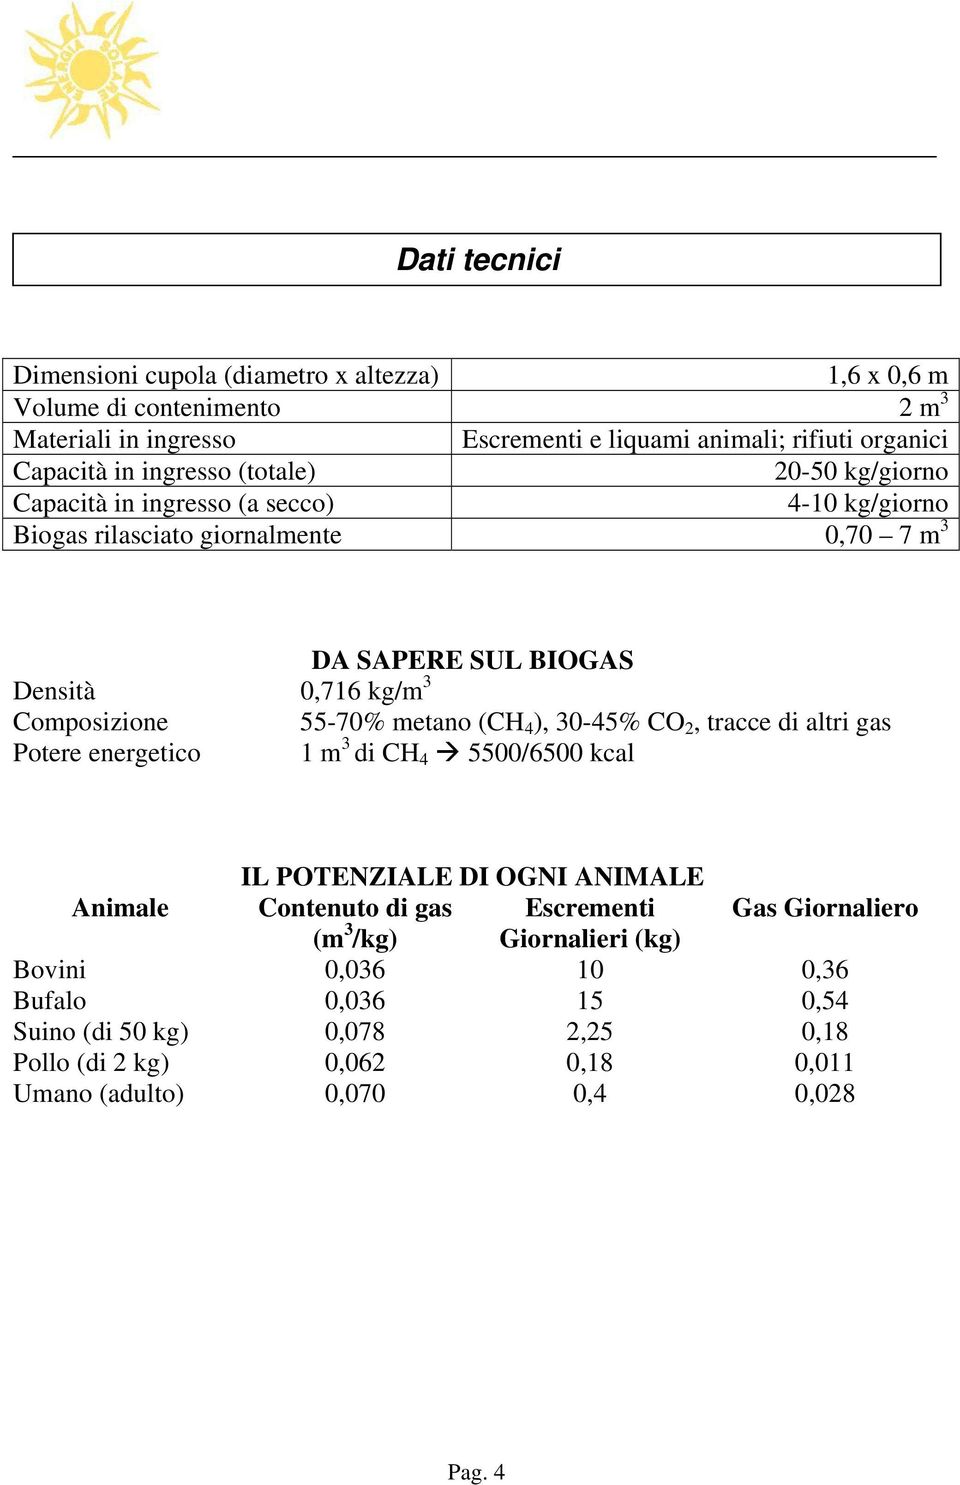 55-70% metano (CH 4 ), 30-45% CO 2, tracce di altri gas Potere energetico 1 m 3 di CH 4 5500/6500 kcal IL POTENZIALE DI OGNI ANIMALE Animale Contenuto di gas Escrementi Gas